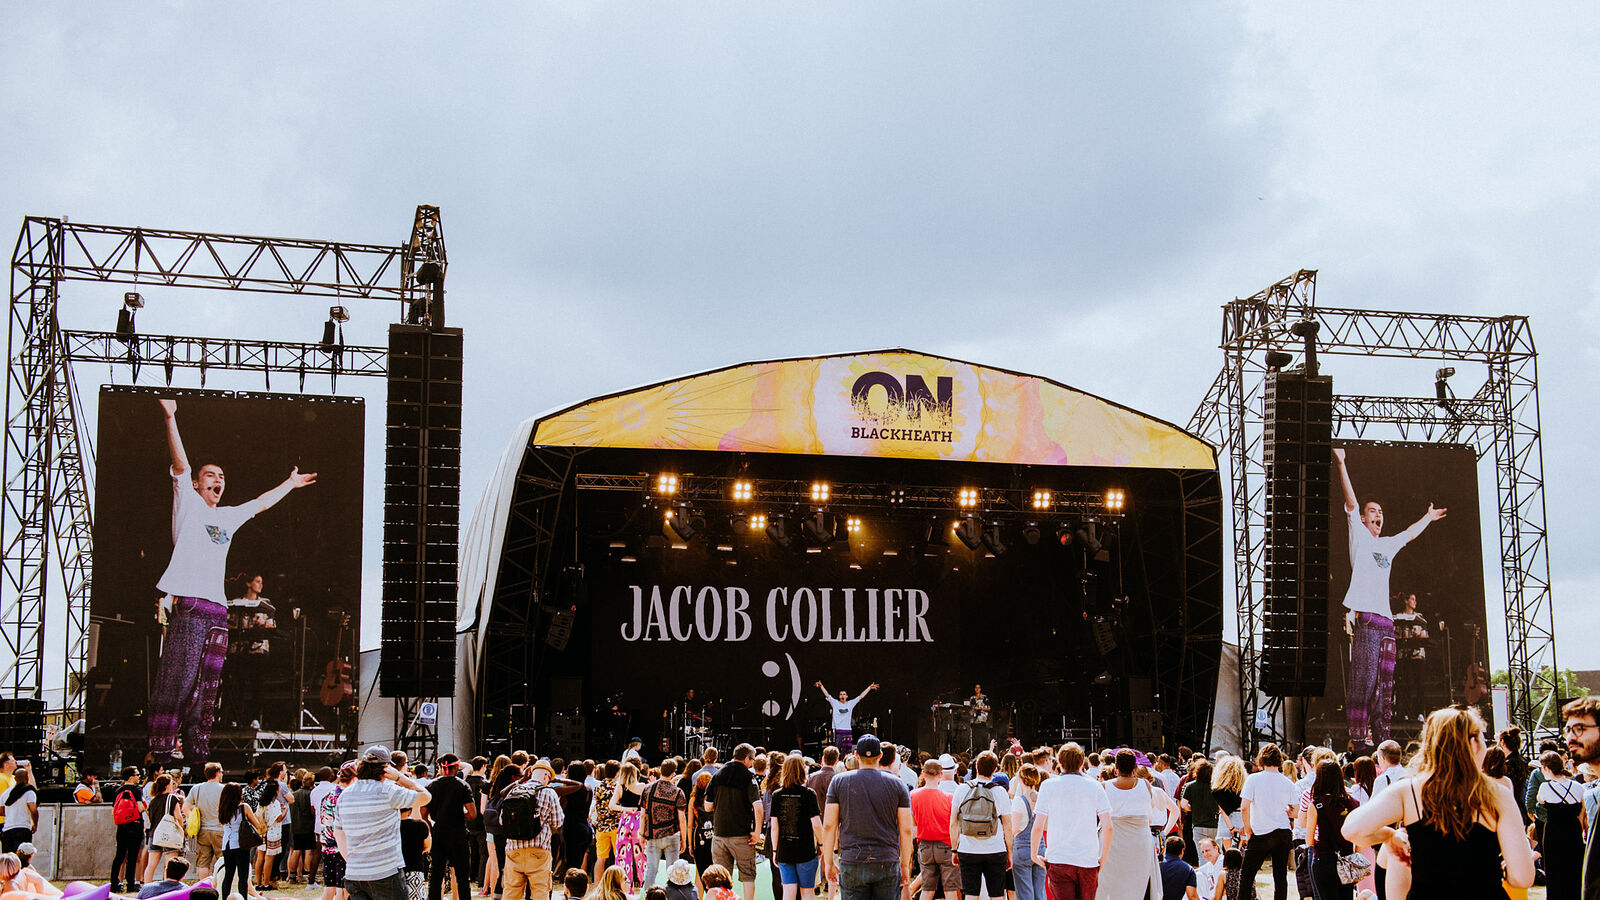 Jacob Collier